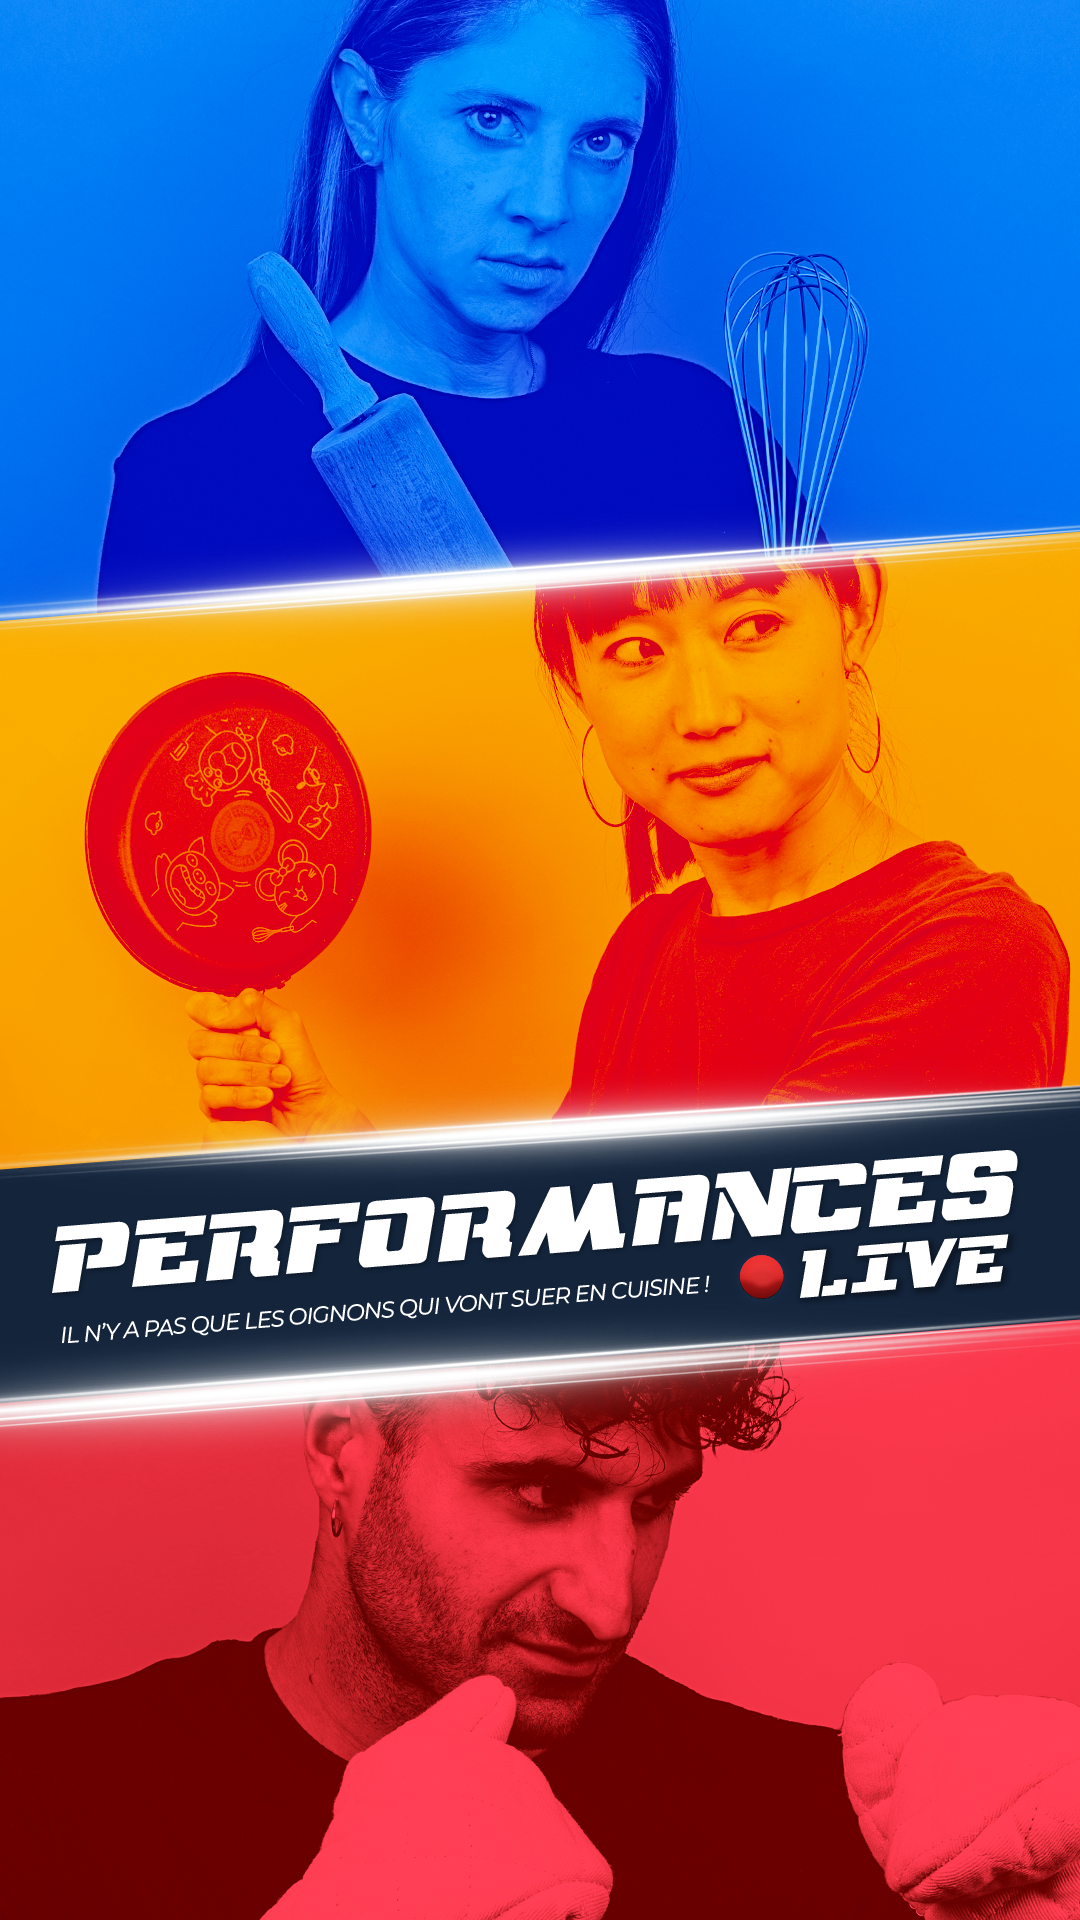 Live performances